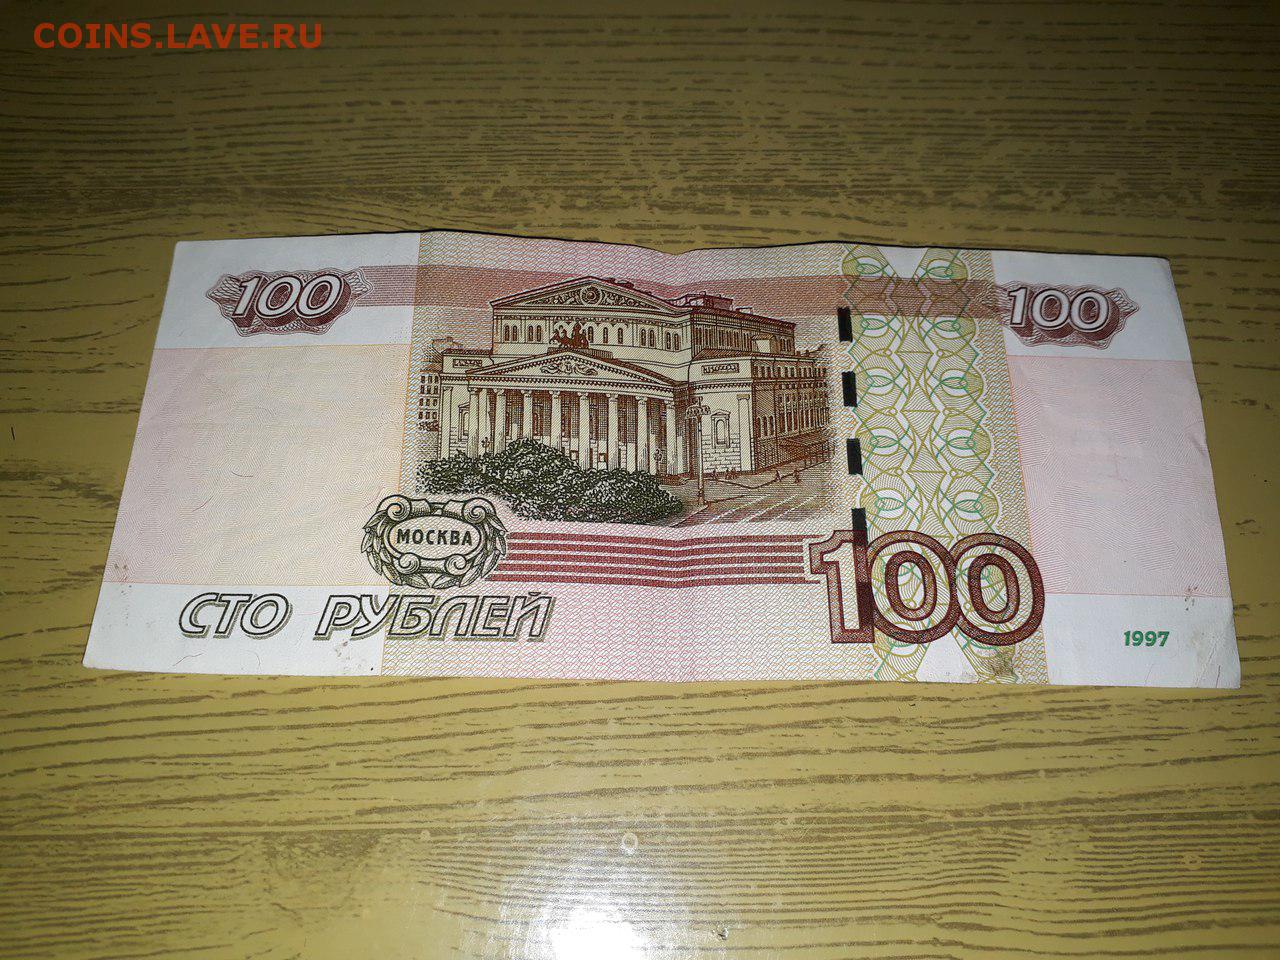 Кинь 100. 100 Рублей 1997 года. Старые СТО рублей 1997. Старые 100 рублей. Старые 100 рублей 1997.